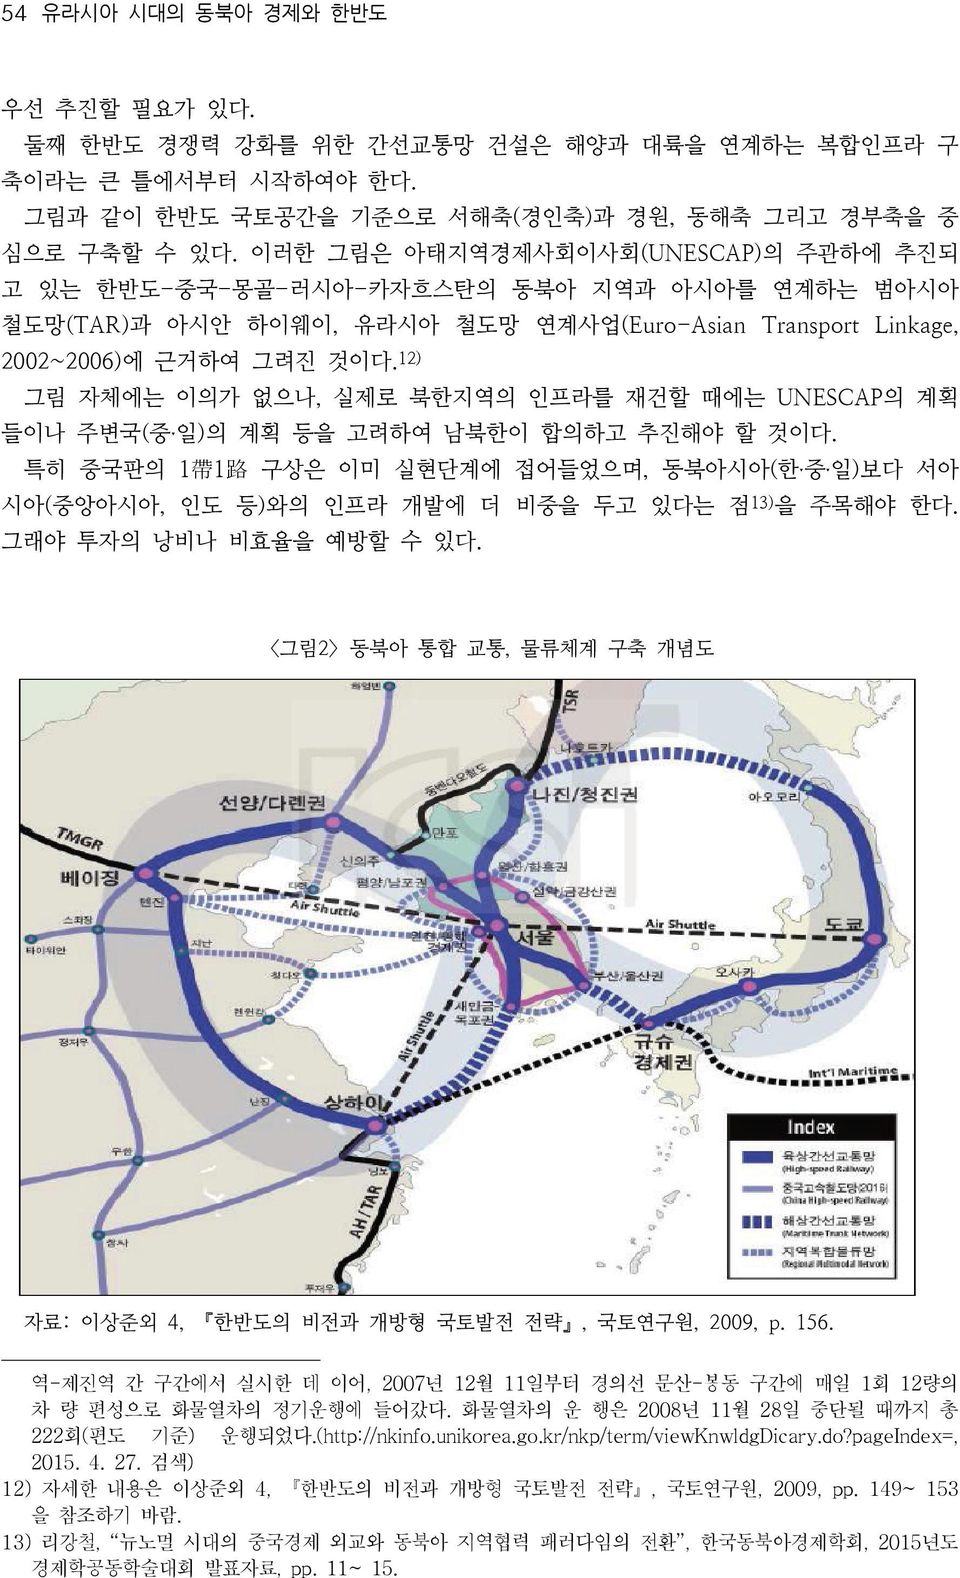 12) 그림 자체에는 이의가 없으나, 실제로 북한지역의 인프라를 재건할 때에는 UNESCAP의 계획 들이나 주변국(중ˑ일)의 계획 등을 고려하여 남북한이 합의하고 추진해야 할 것이다.